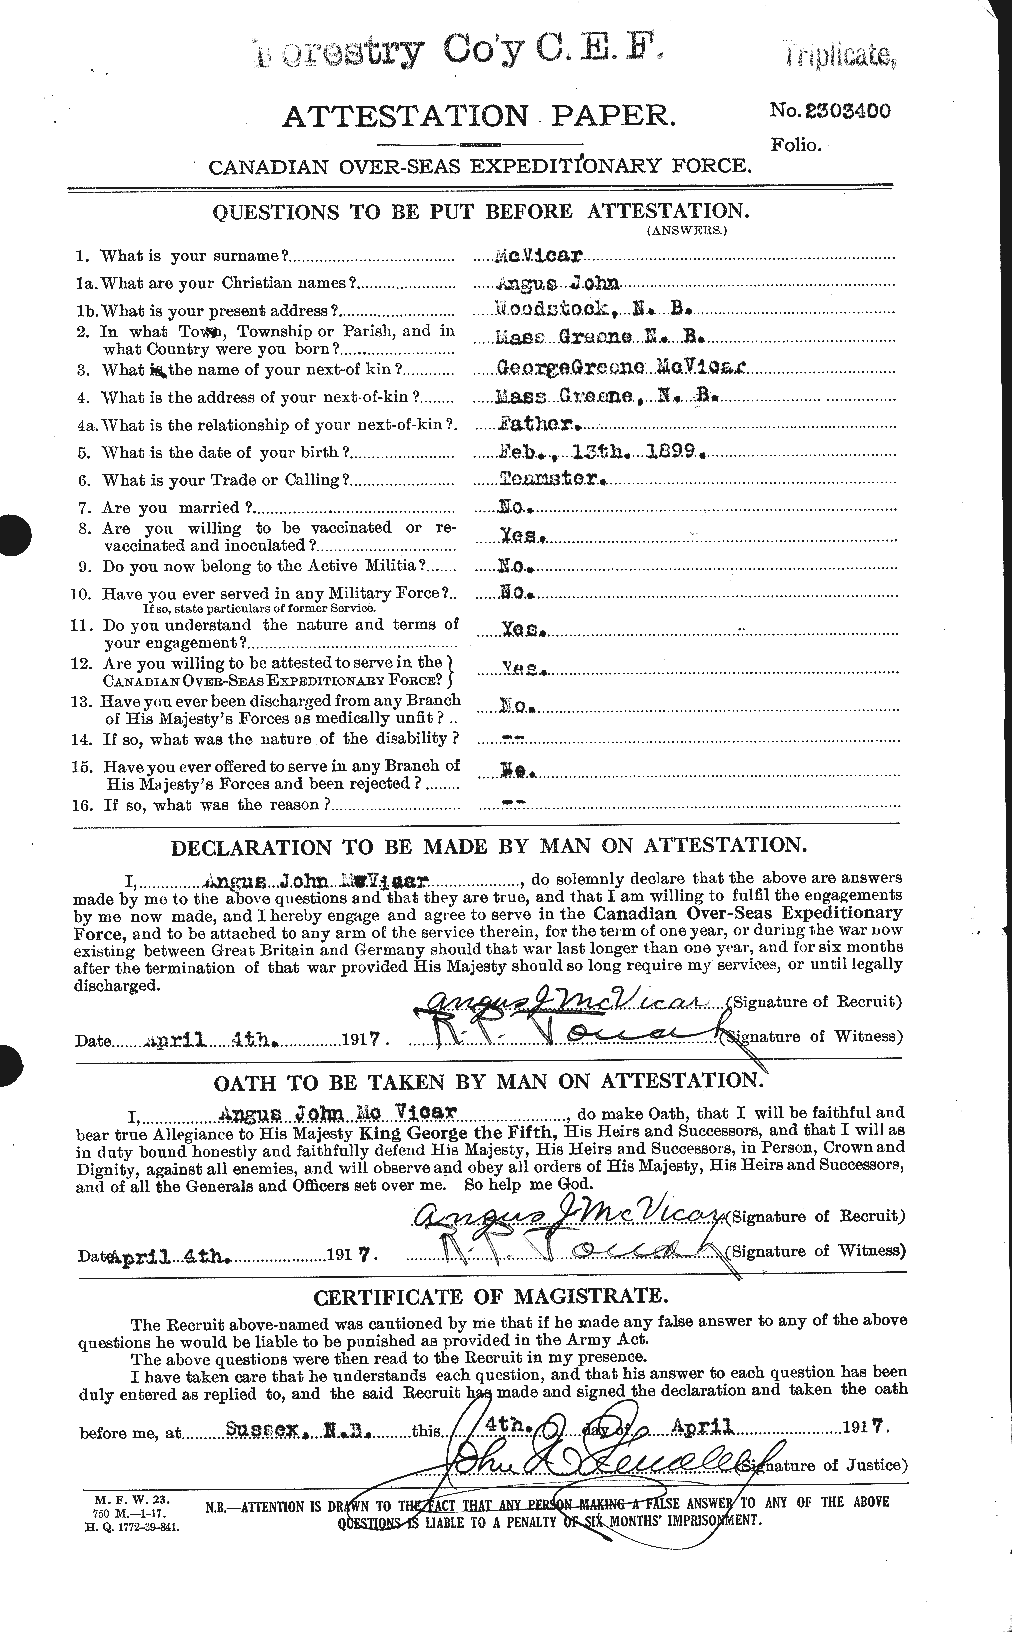 Dossiers du Personnel de la Première Guerre mondiale - CEC 547299a